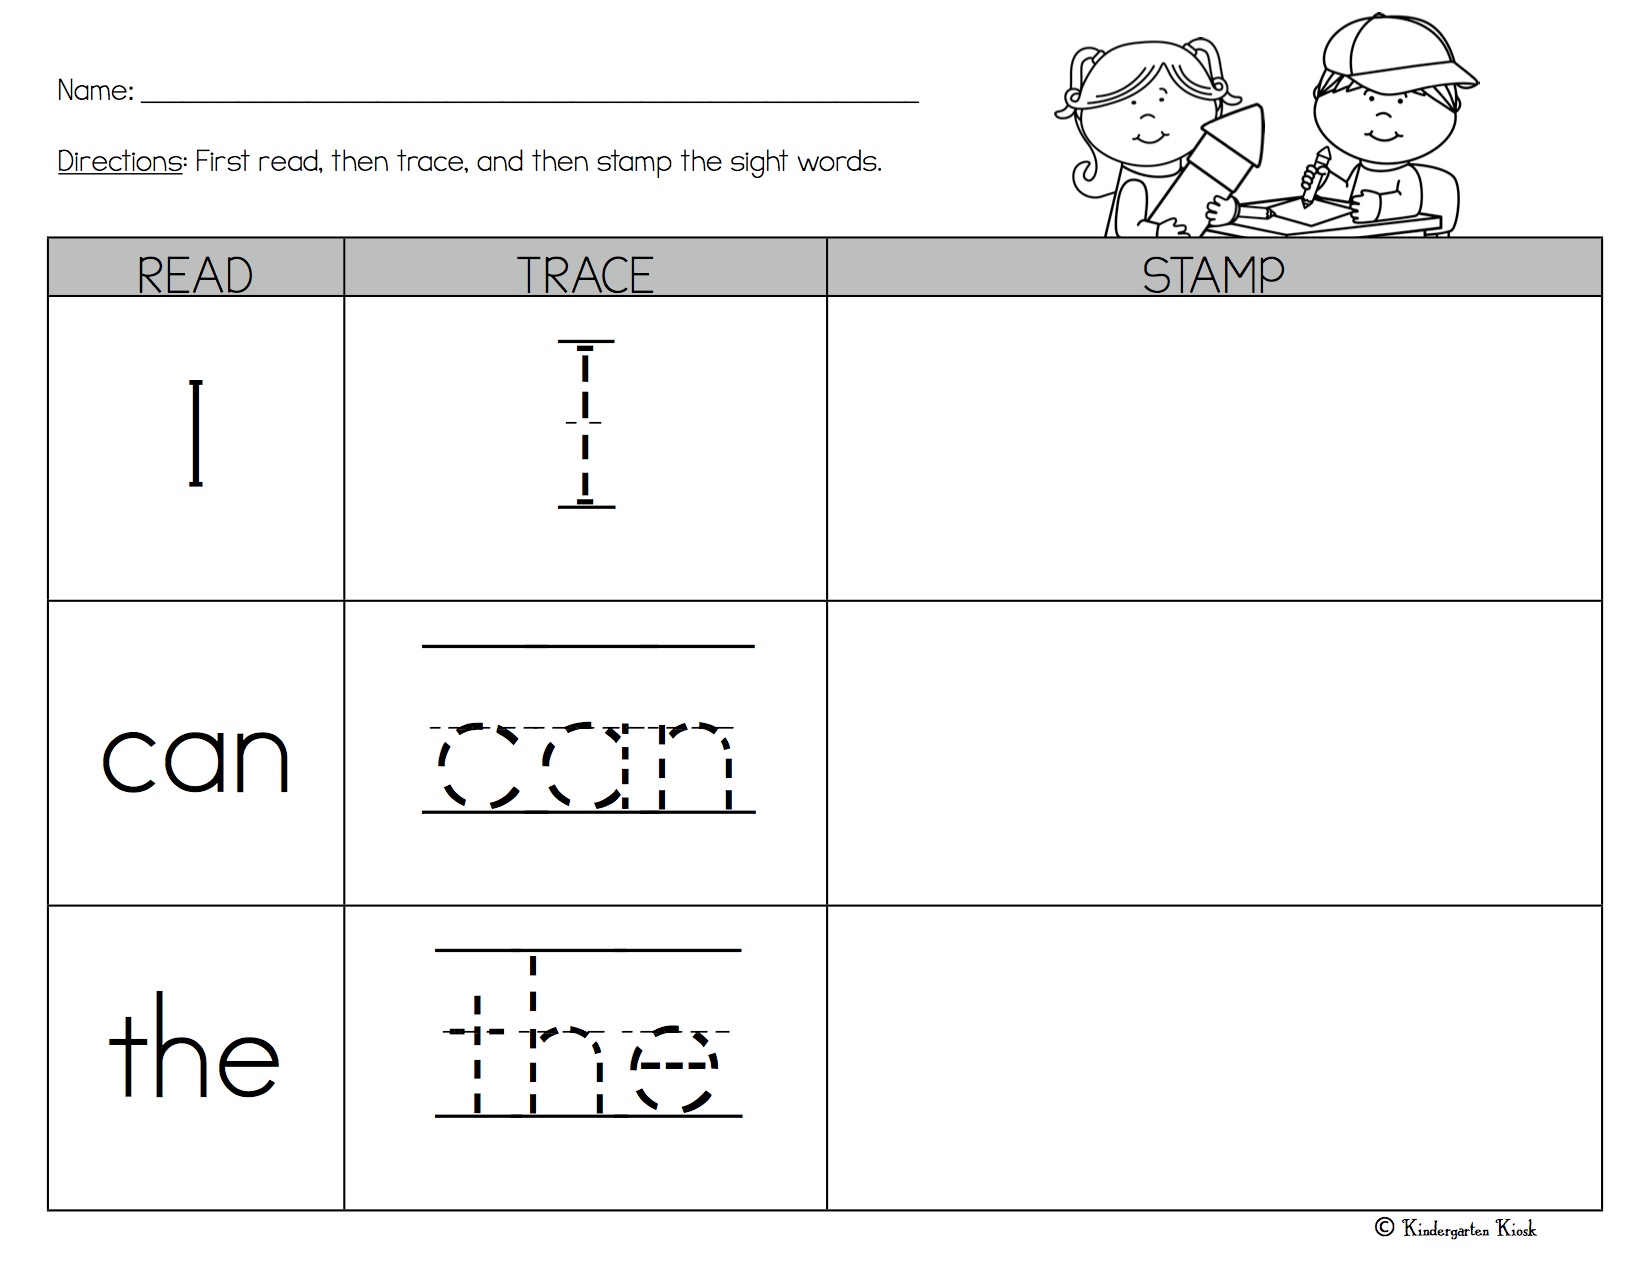 Wonders Kindergarten Sight Word Worksheets — Kindergarten Kiosk Pertaining To Sight Words Worksheet For Kindergarten